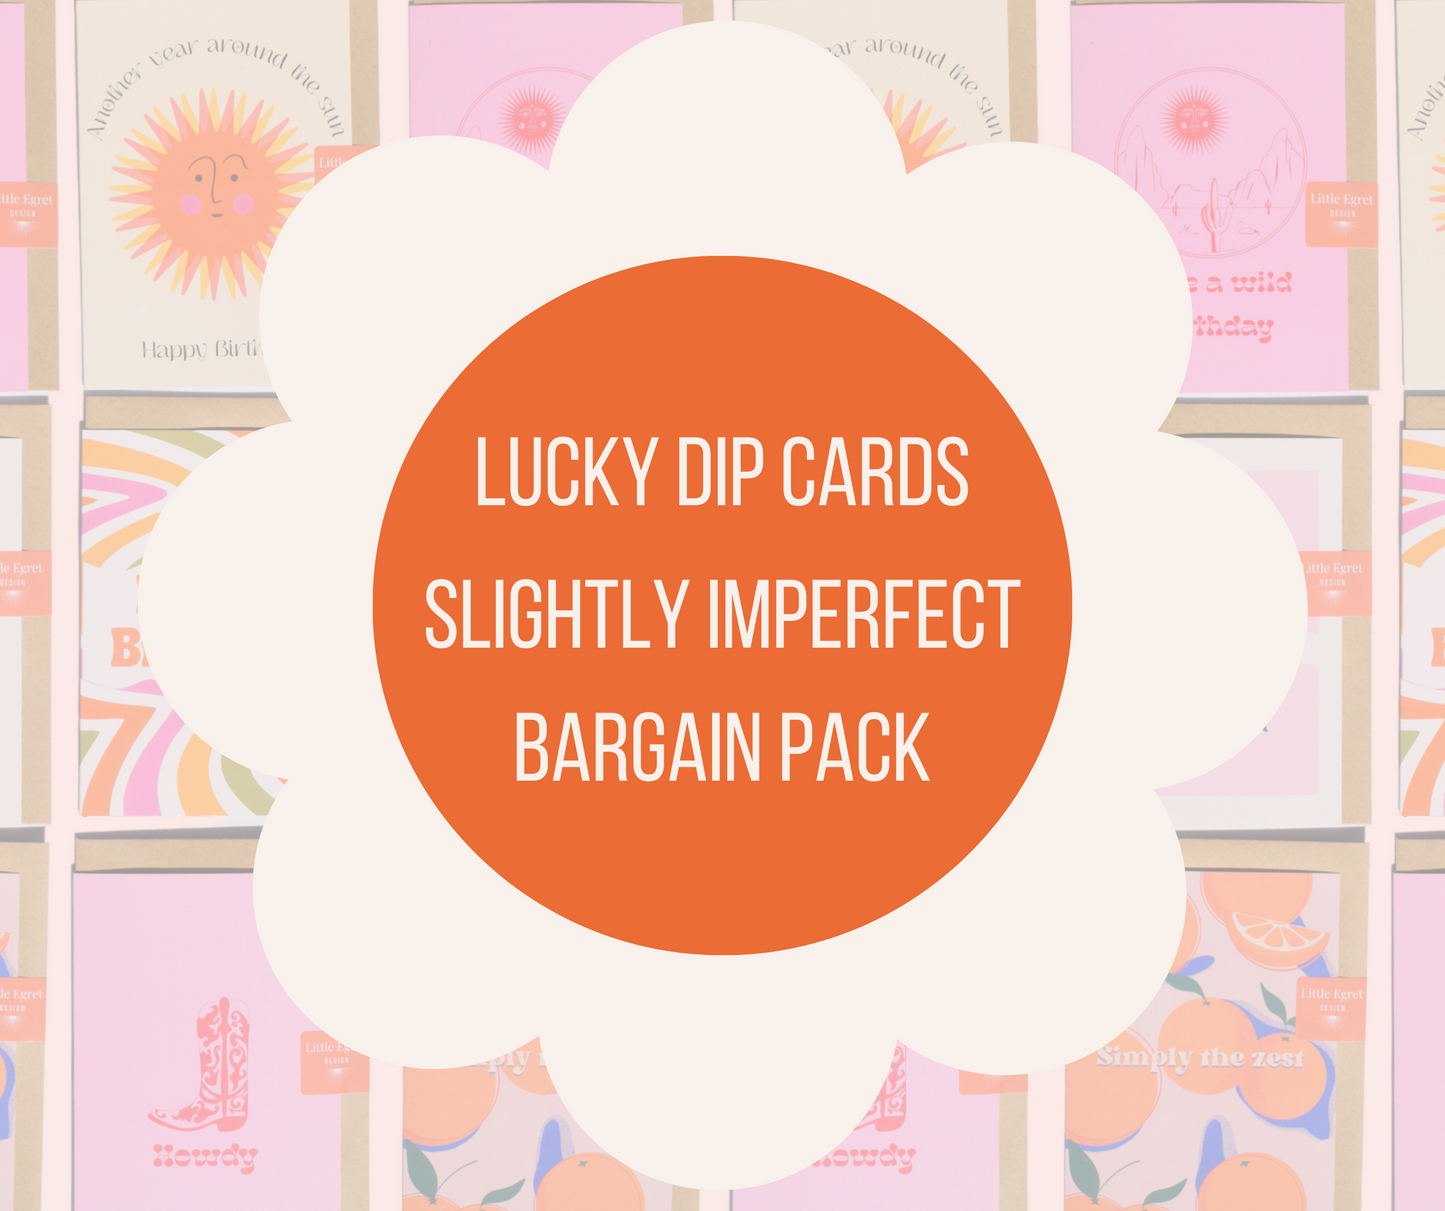 Lucky dip seconds card bundle